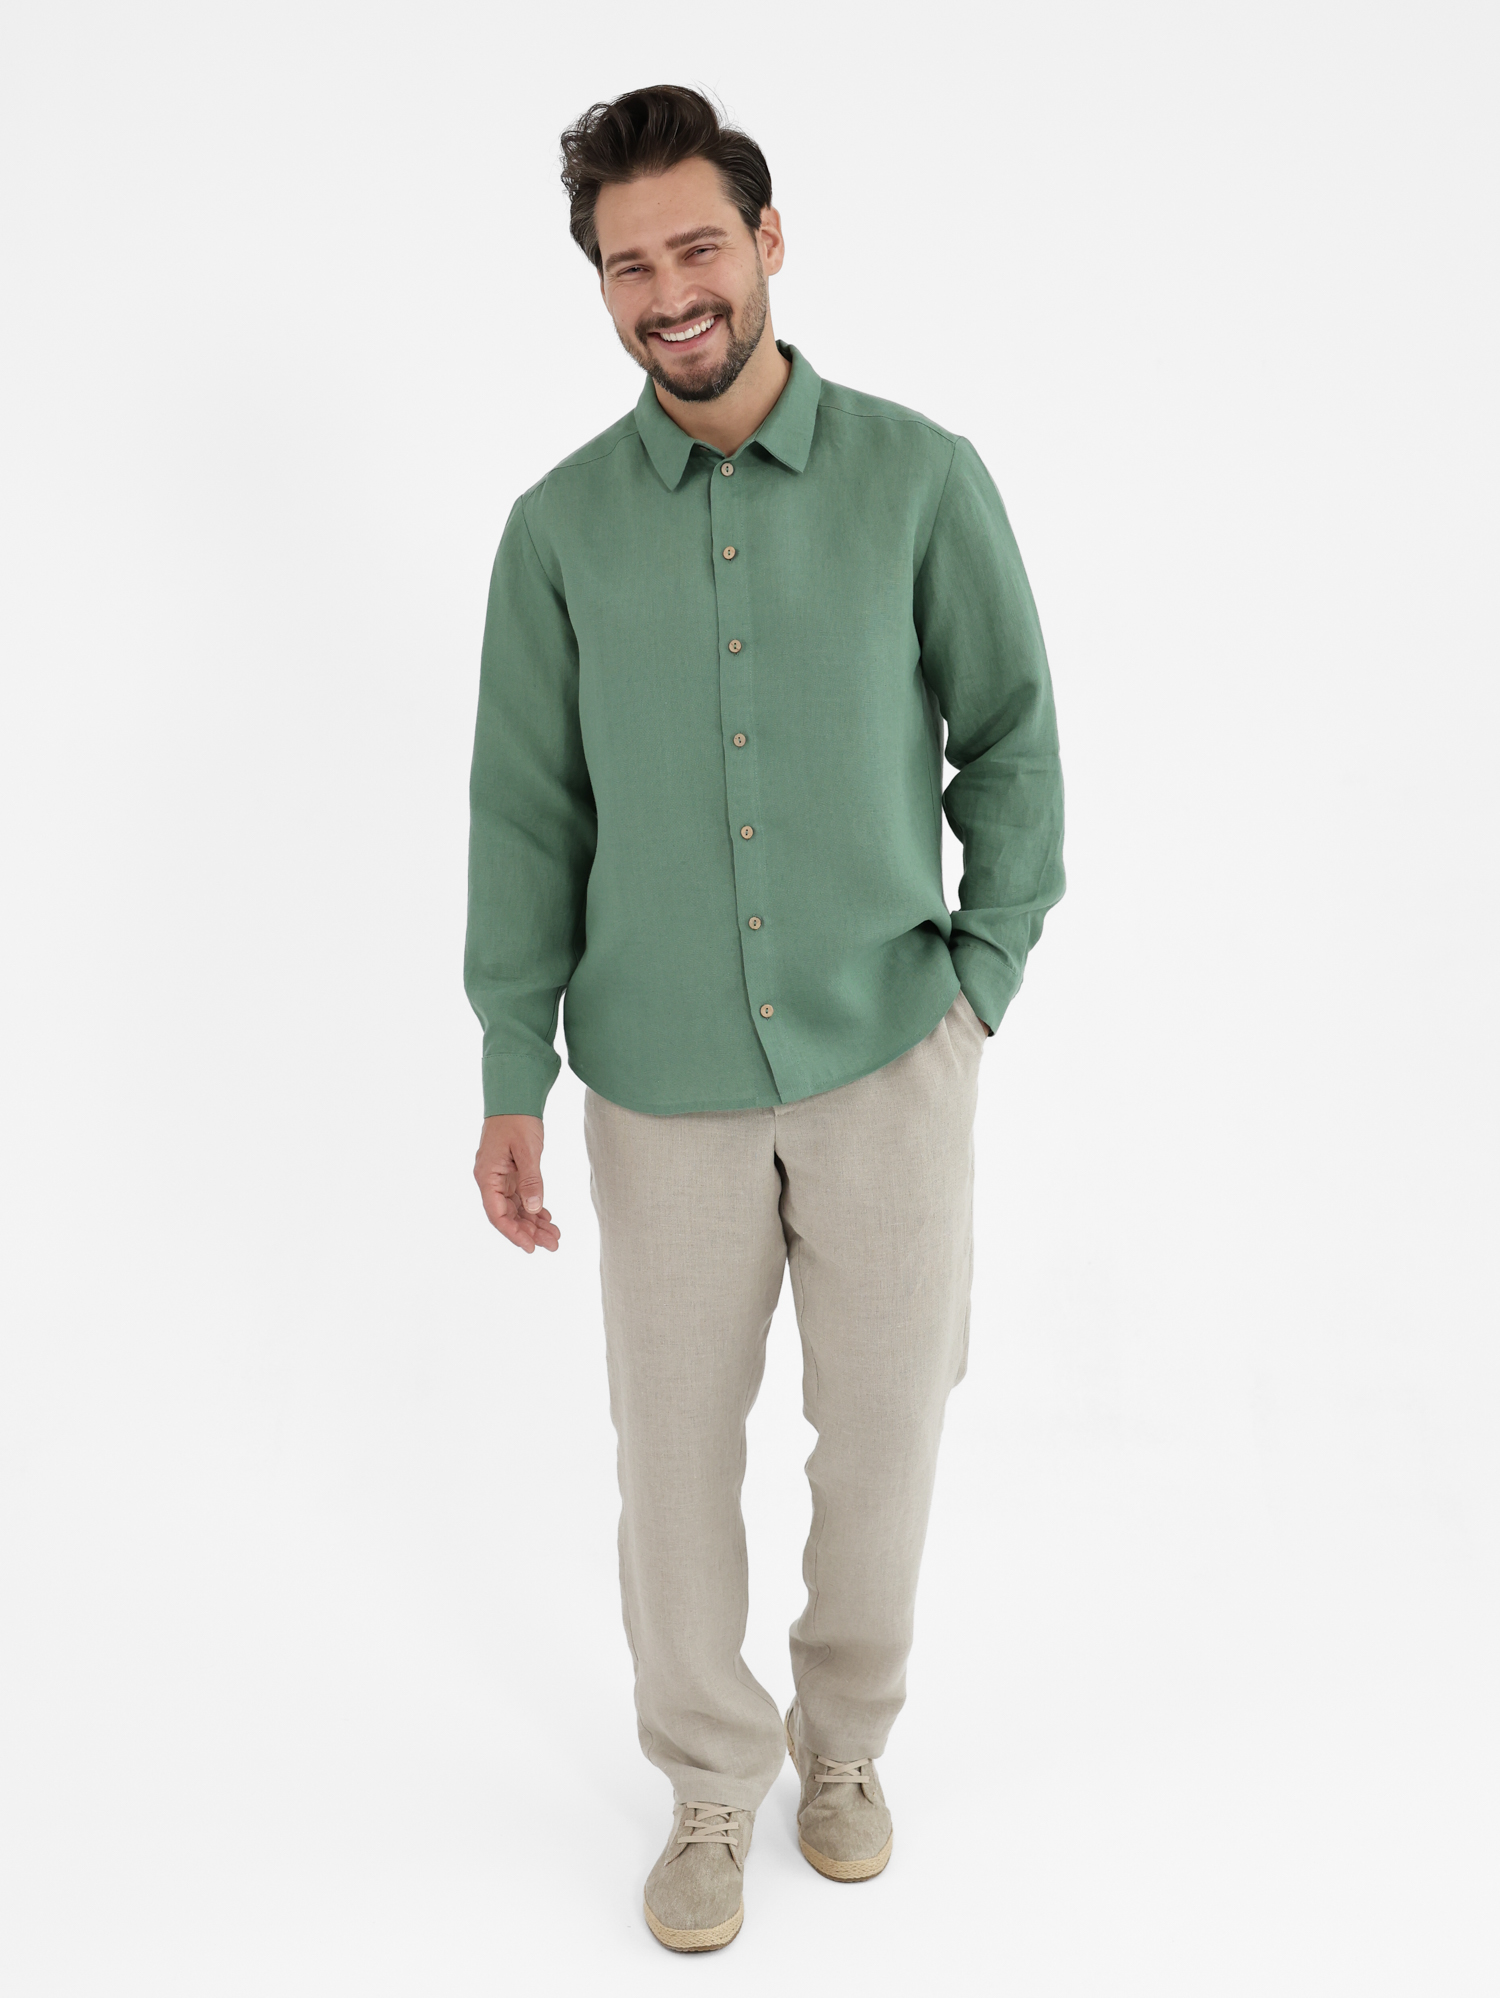 Men's green linen shirt